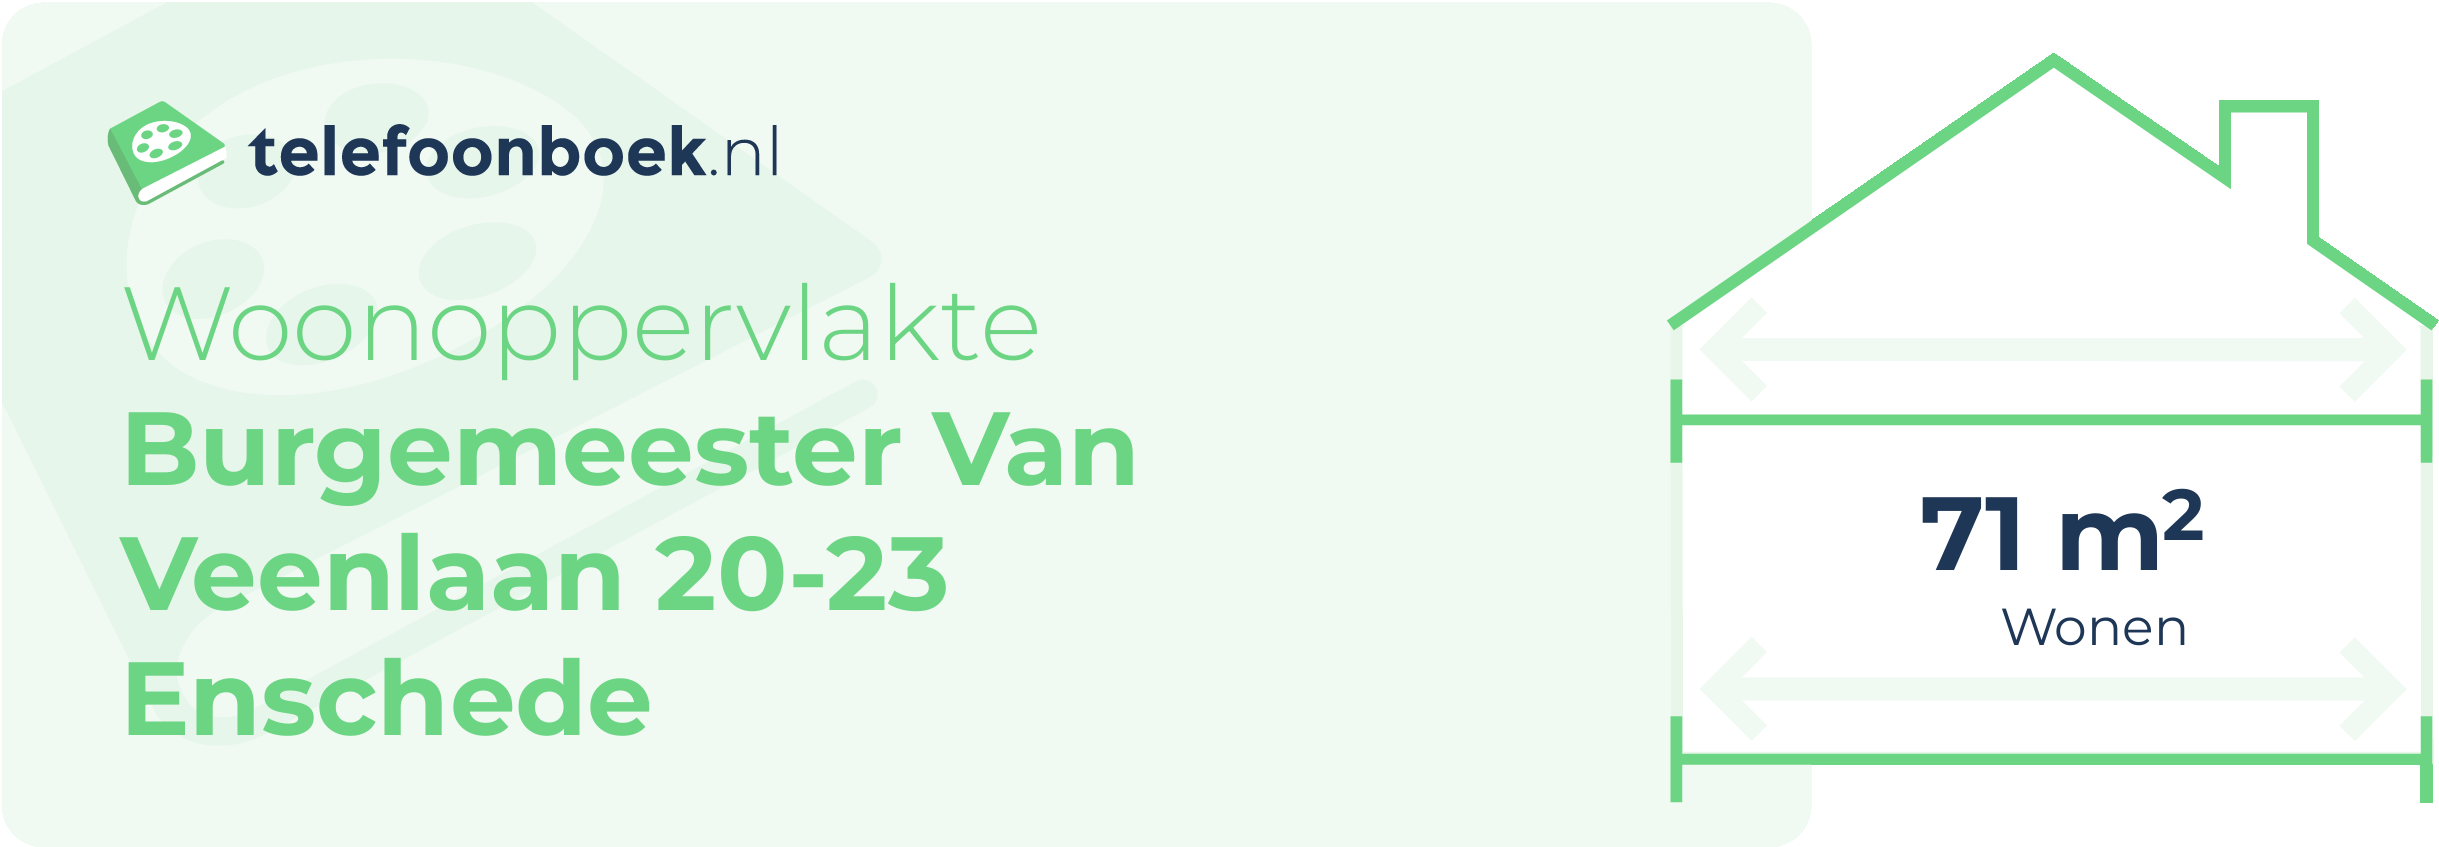 Woonoppervlakte Burgemeester Van Veenlaan 20-23 Enschede